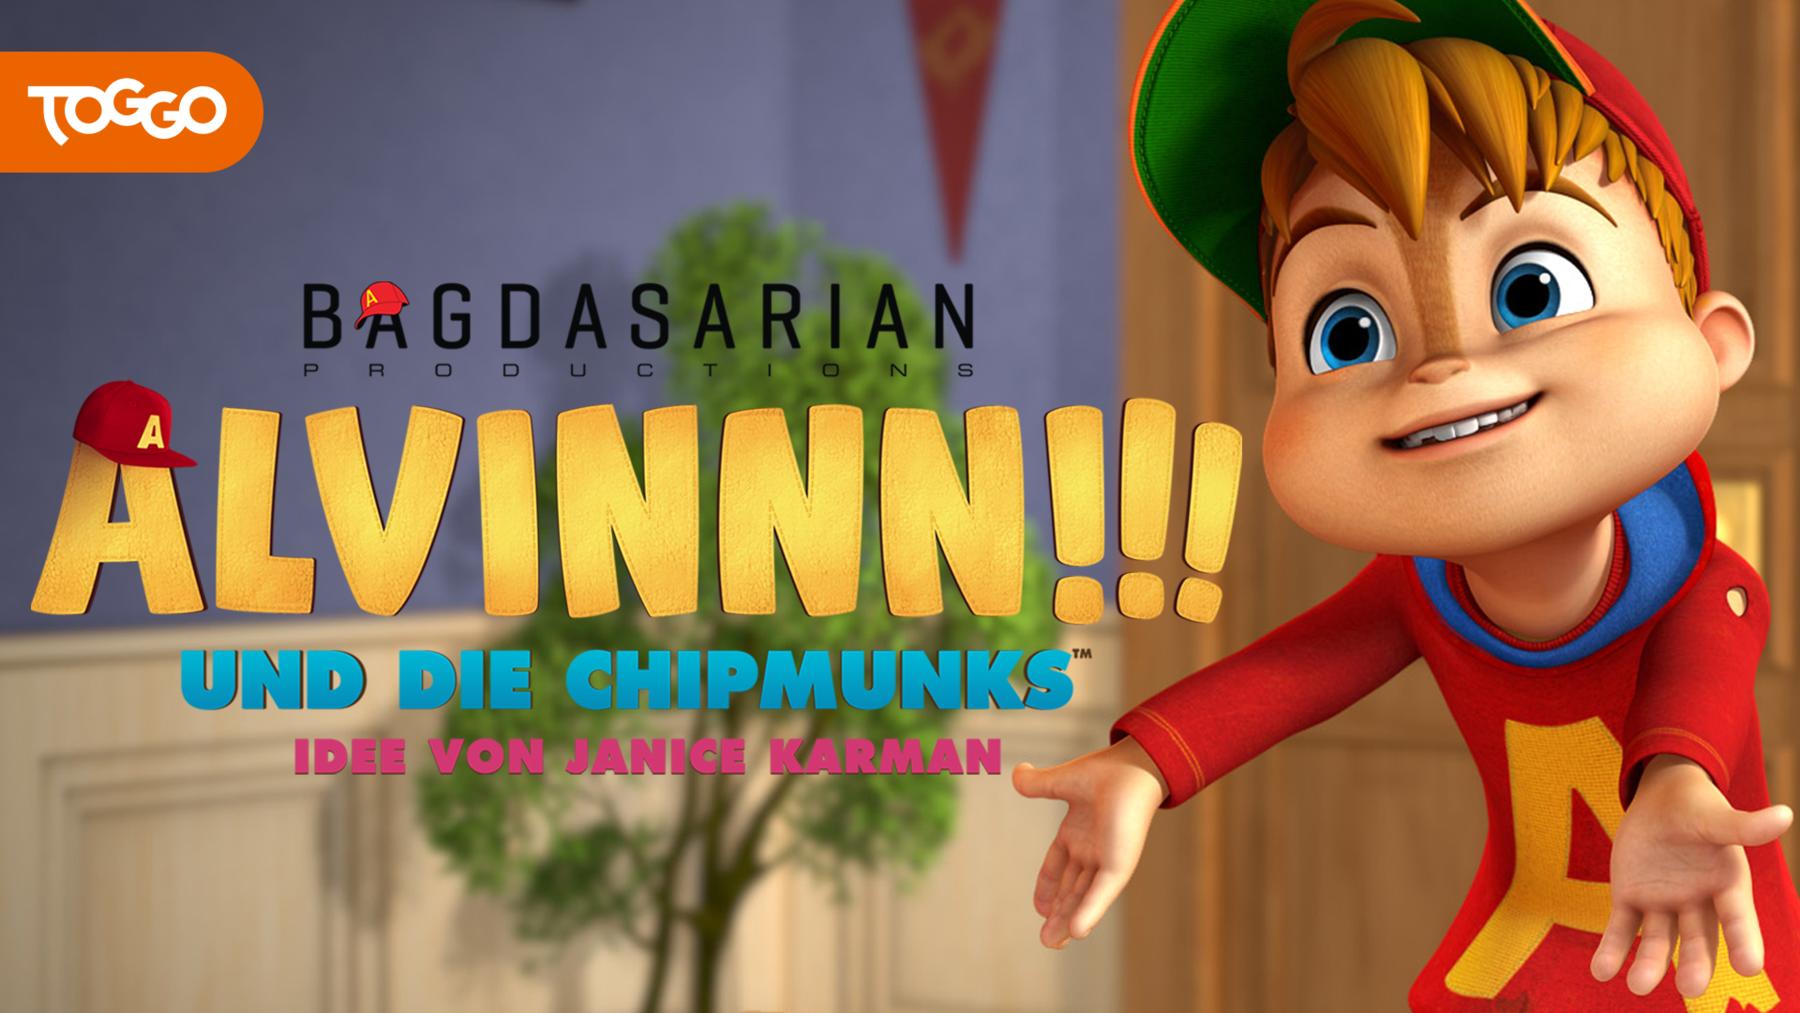 ALVINNN!!! und die Chipmunks